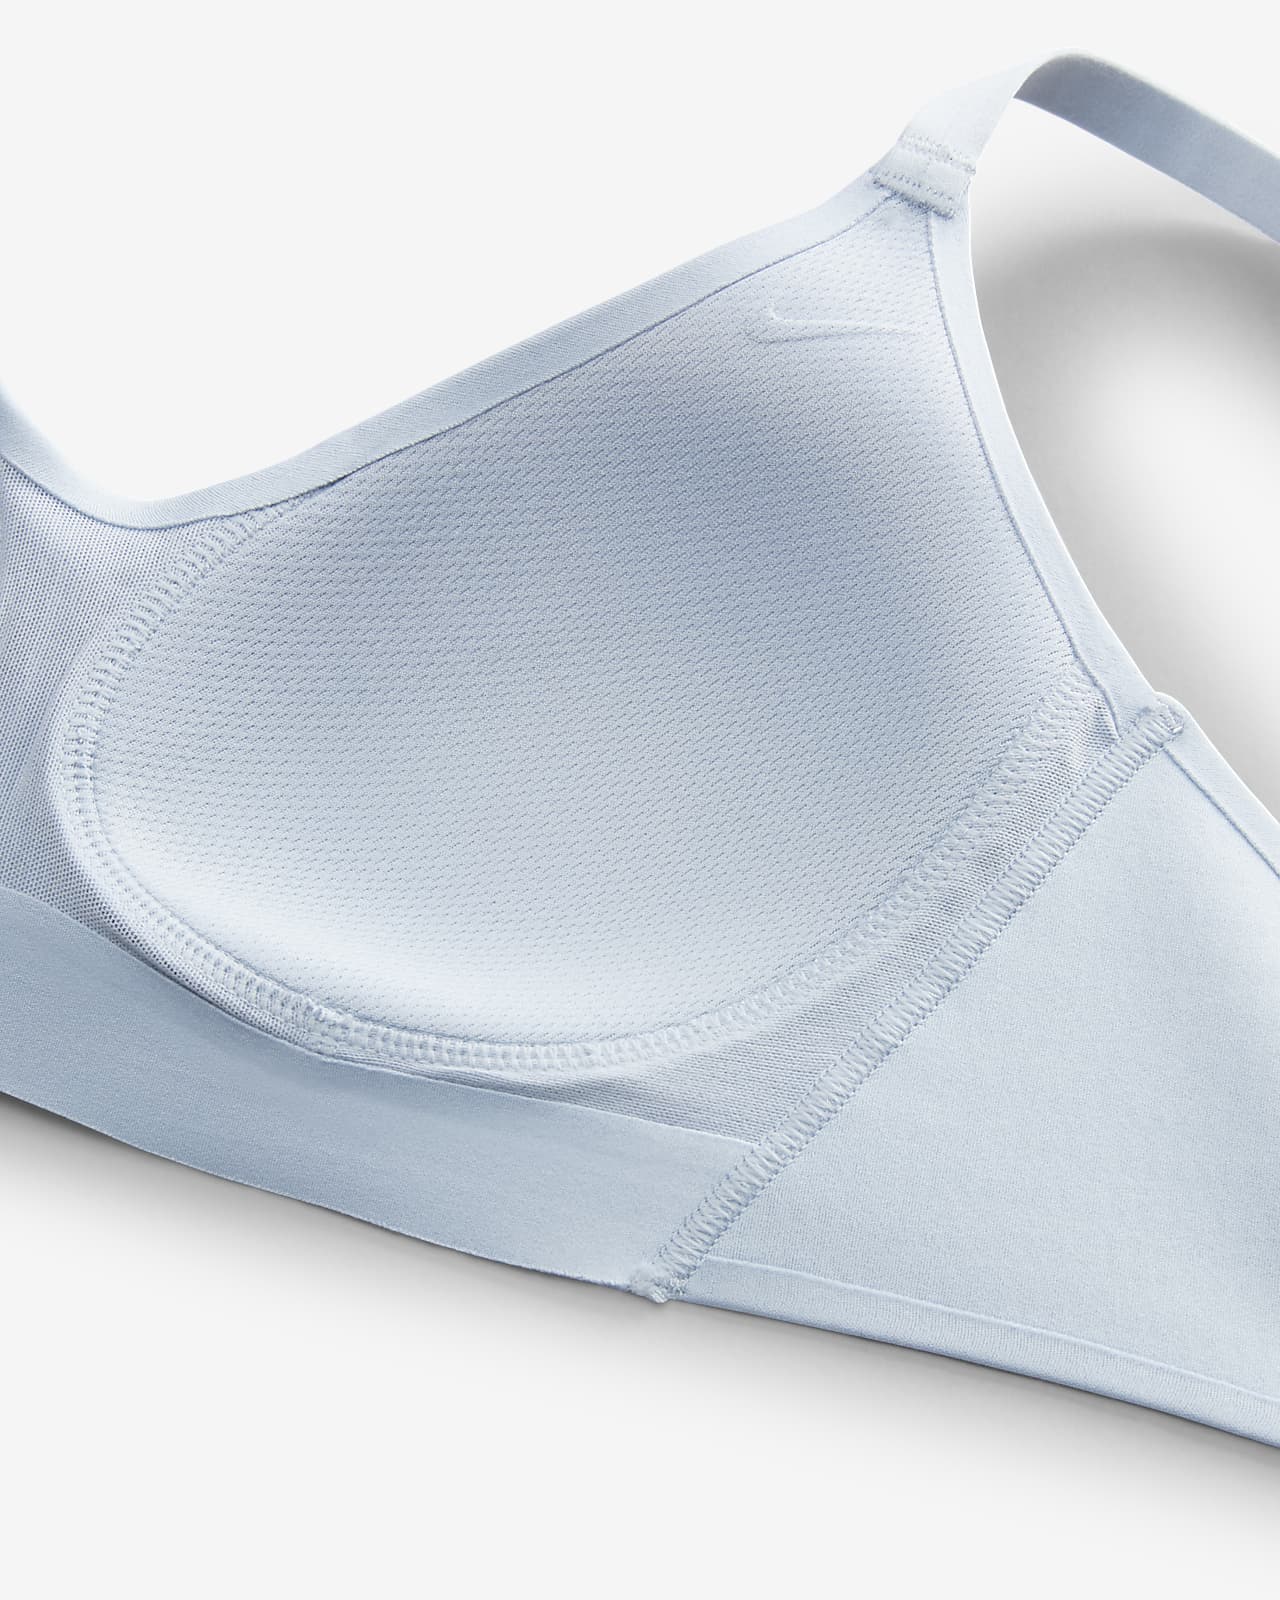 Nike Dri-FIT Alate Women's Minimalist Light-Support Padded Sports Bra